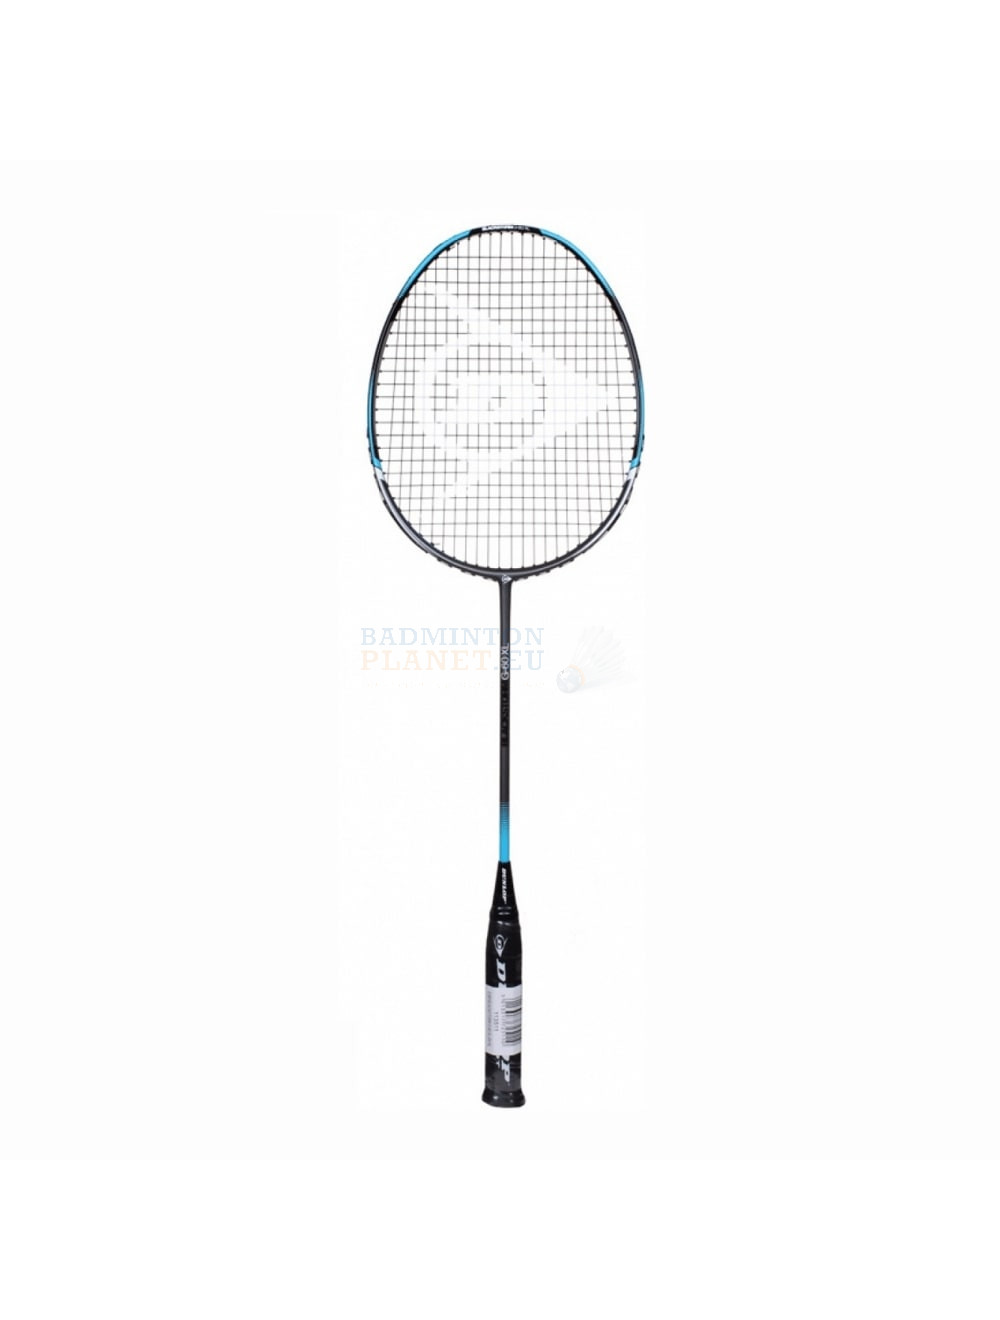 Dunlop Blackstorm G60 XL badminton racket? Badmintonplanet.eu